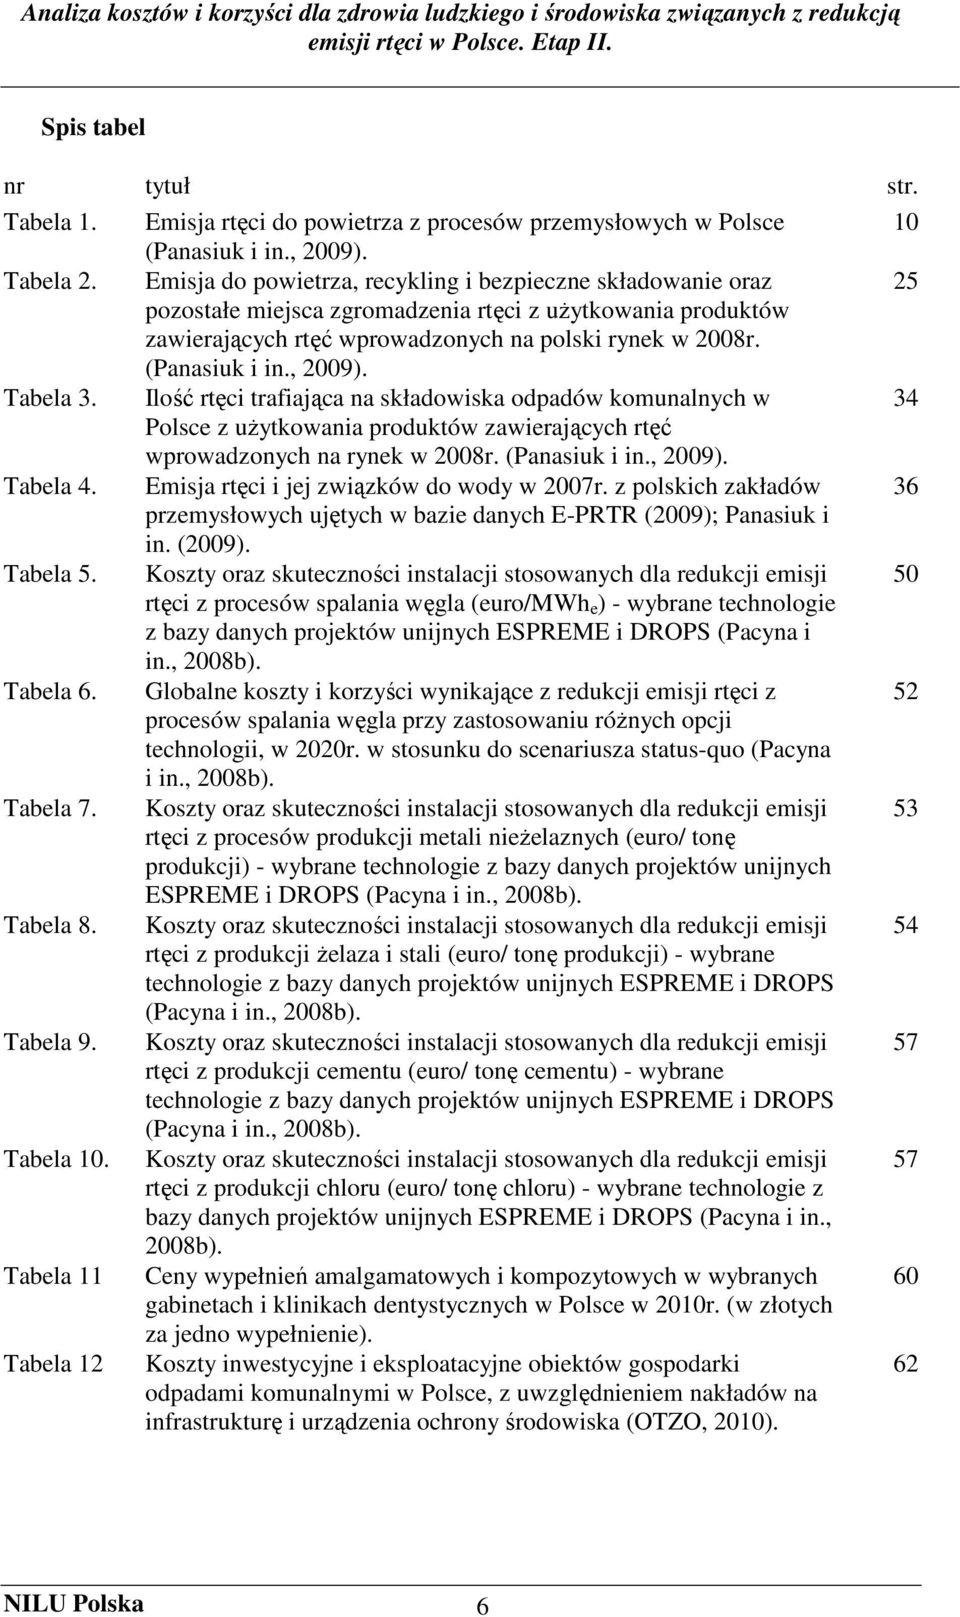 , 2009). Tabela 3. Ilość rtęci trafiająca na składowiska odpadów komunalnych w 34 Polsce z uŝytkowania produktów zawierających rtęć wprowadzonych na rynek w 2008r. (Panasiuk i in., 2009). Tabela 4.